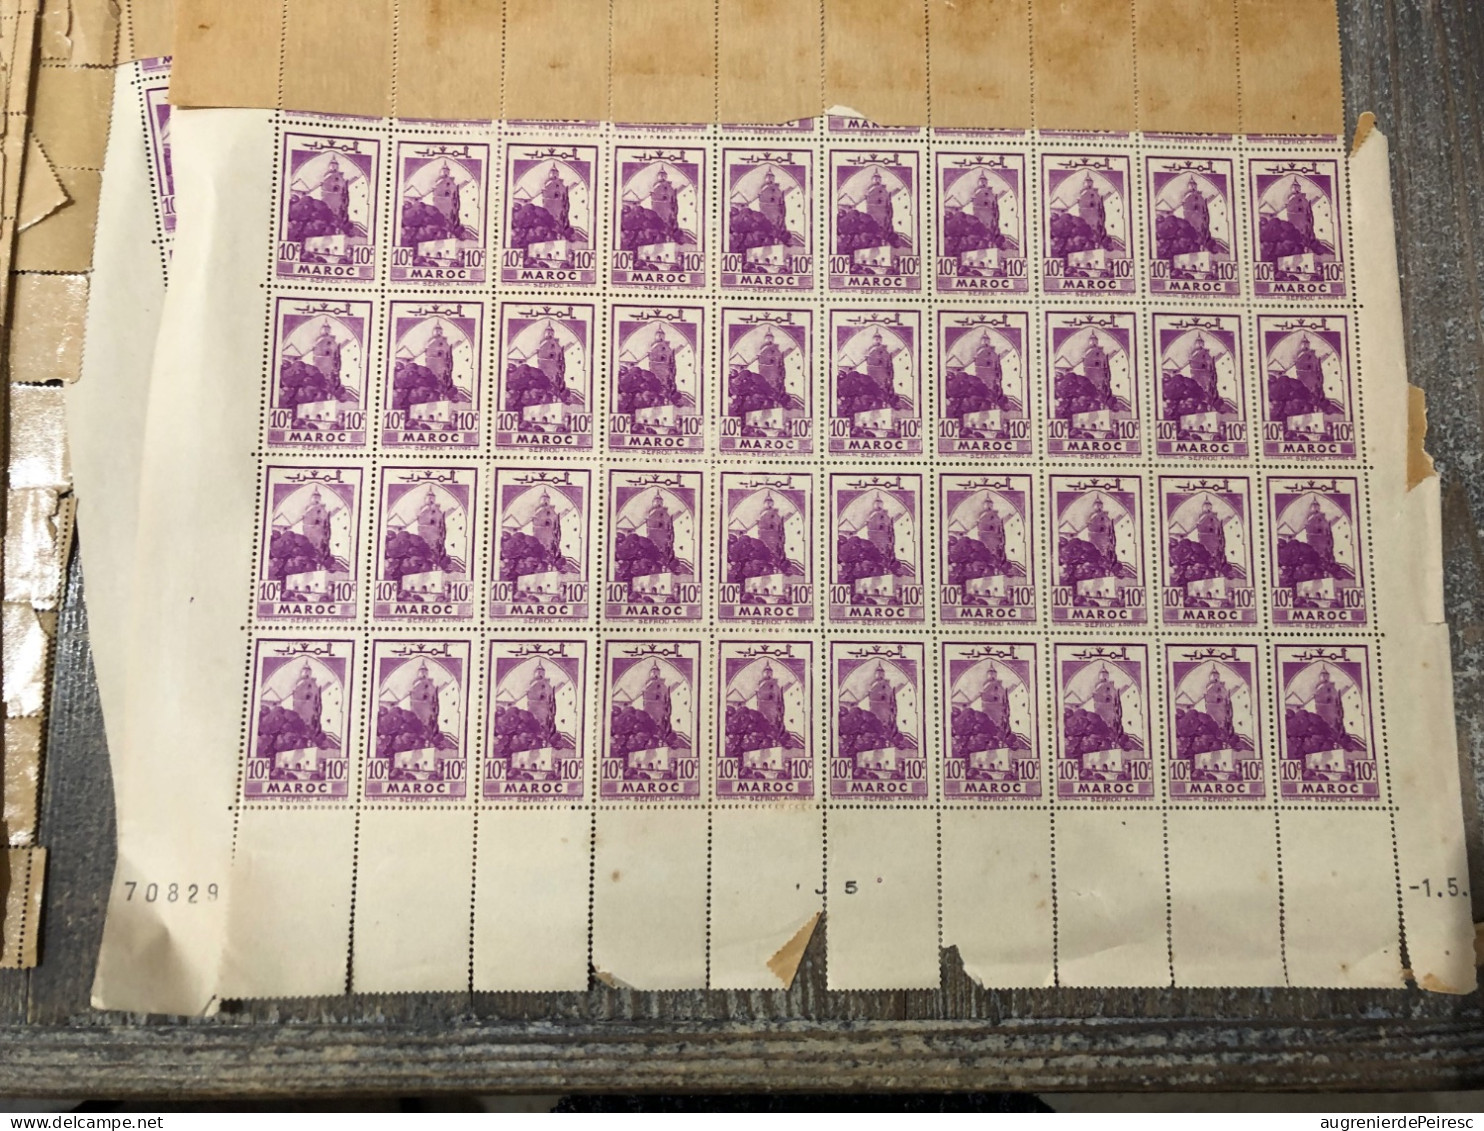 Lot de timbres marocains